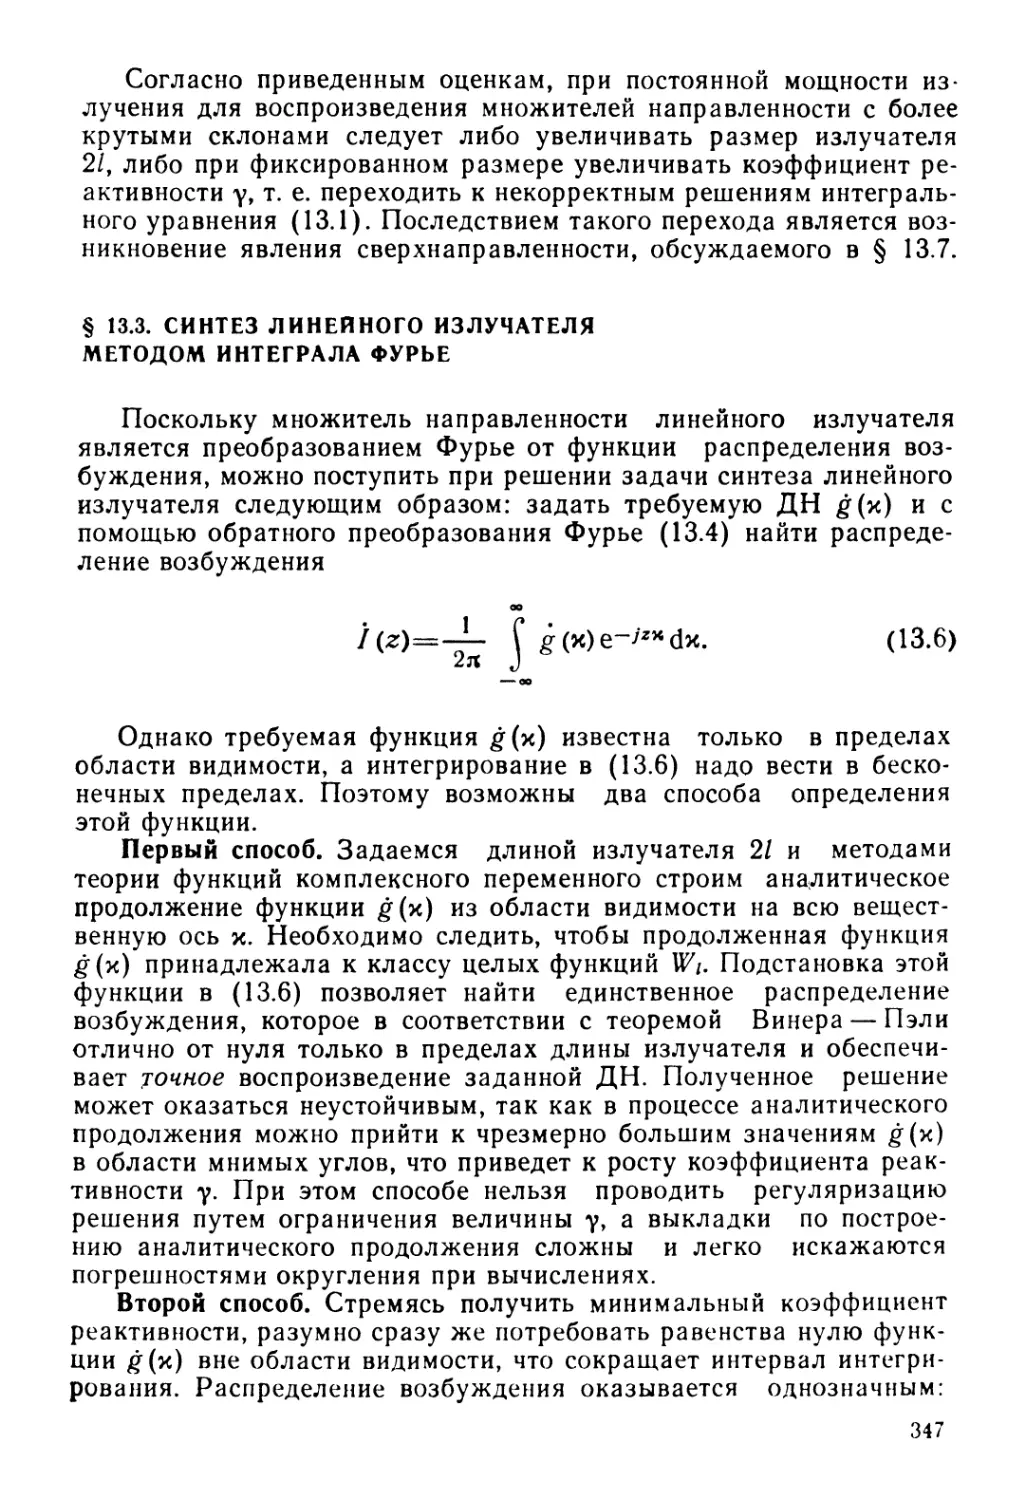 § 13.3. Синтез линейного излучателя методом интеграла Фурье